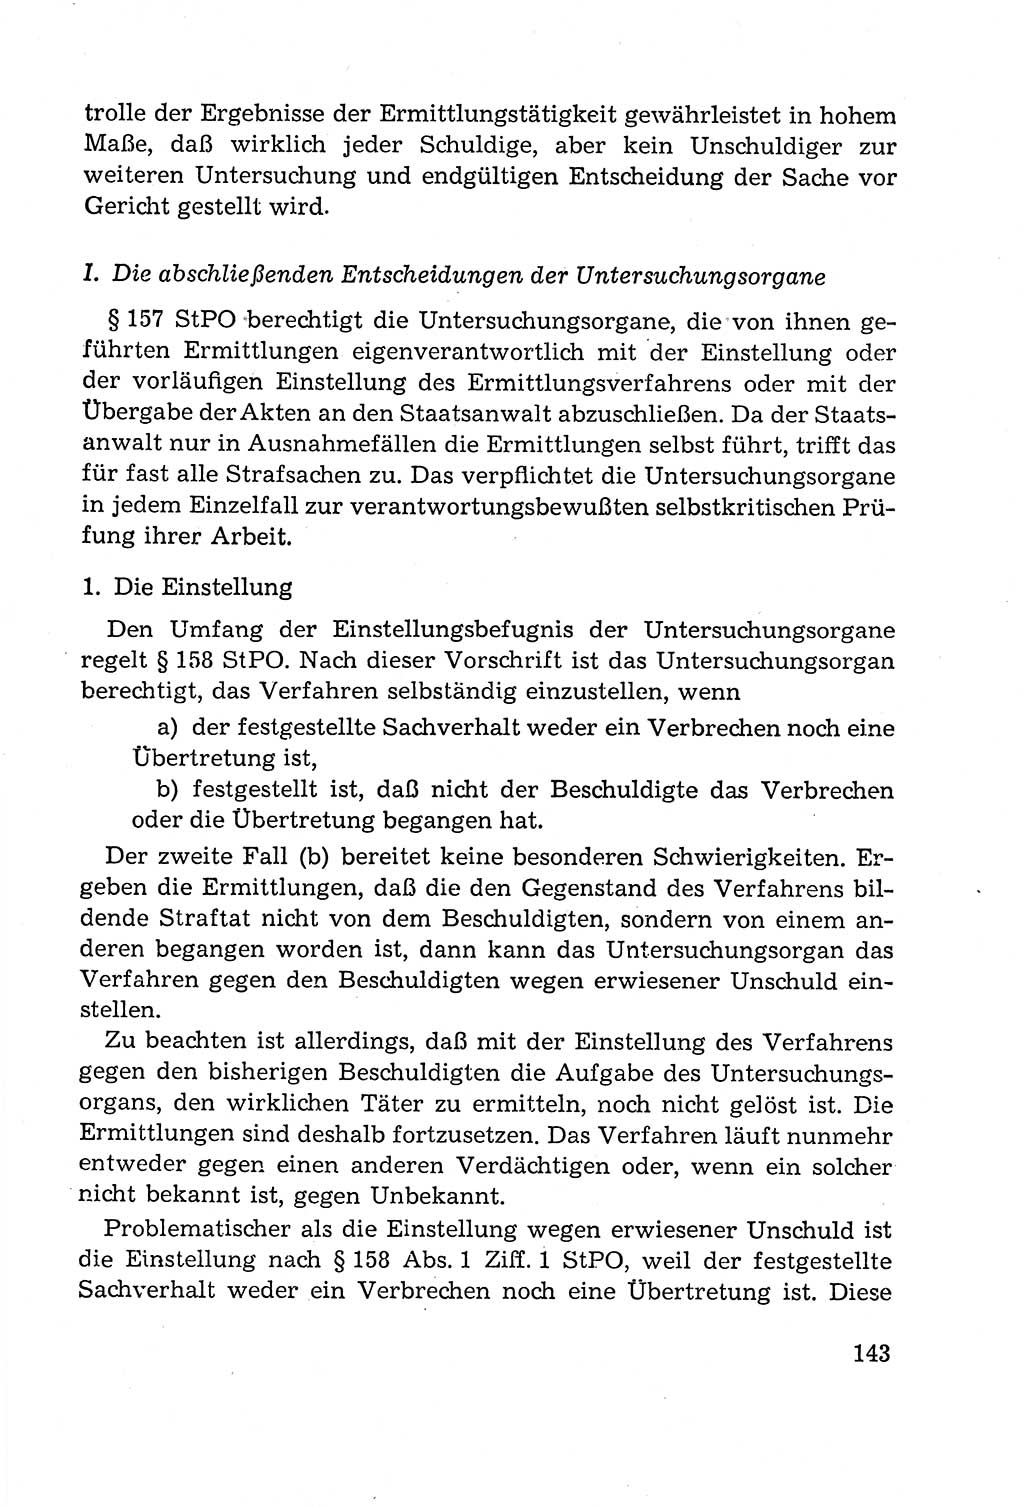 Leitfaden des Strafprozeßrechts der Deutschen Demokratischen Republik (DDR) 1959, Seite 143 (LF StPR DDR 1959, S. 143)